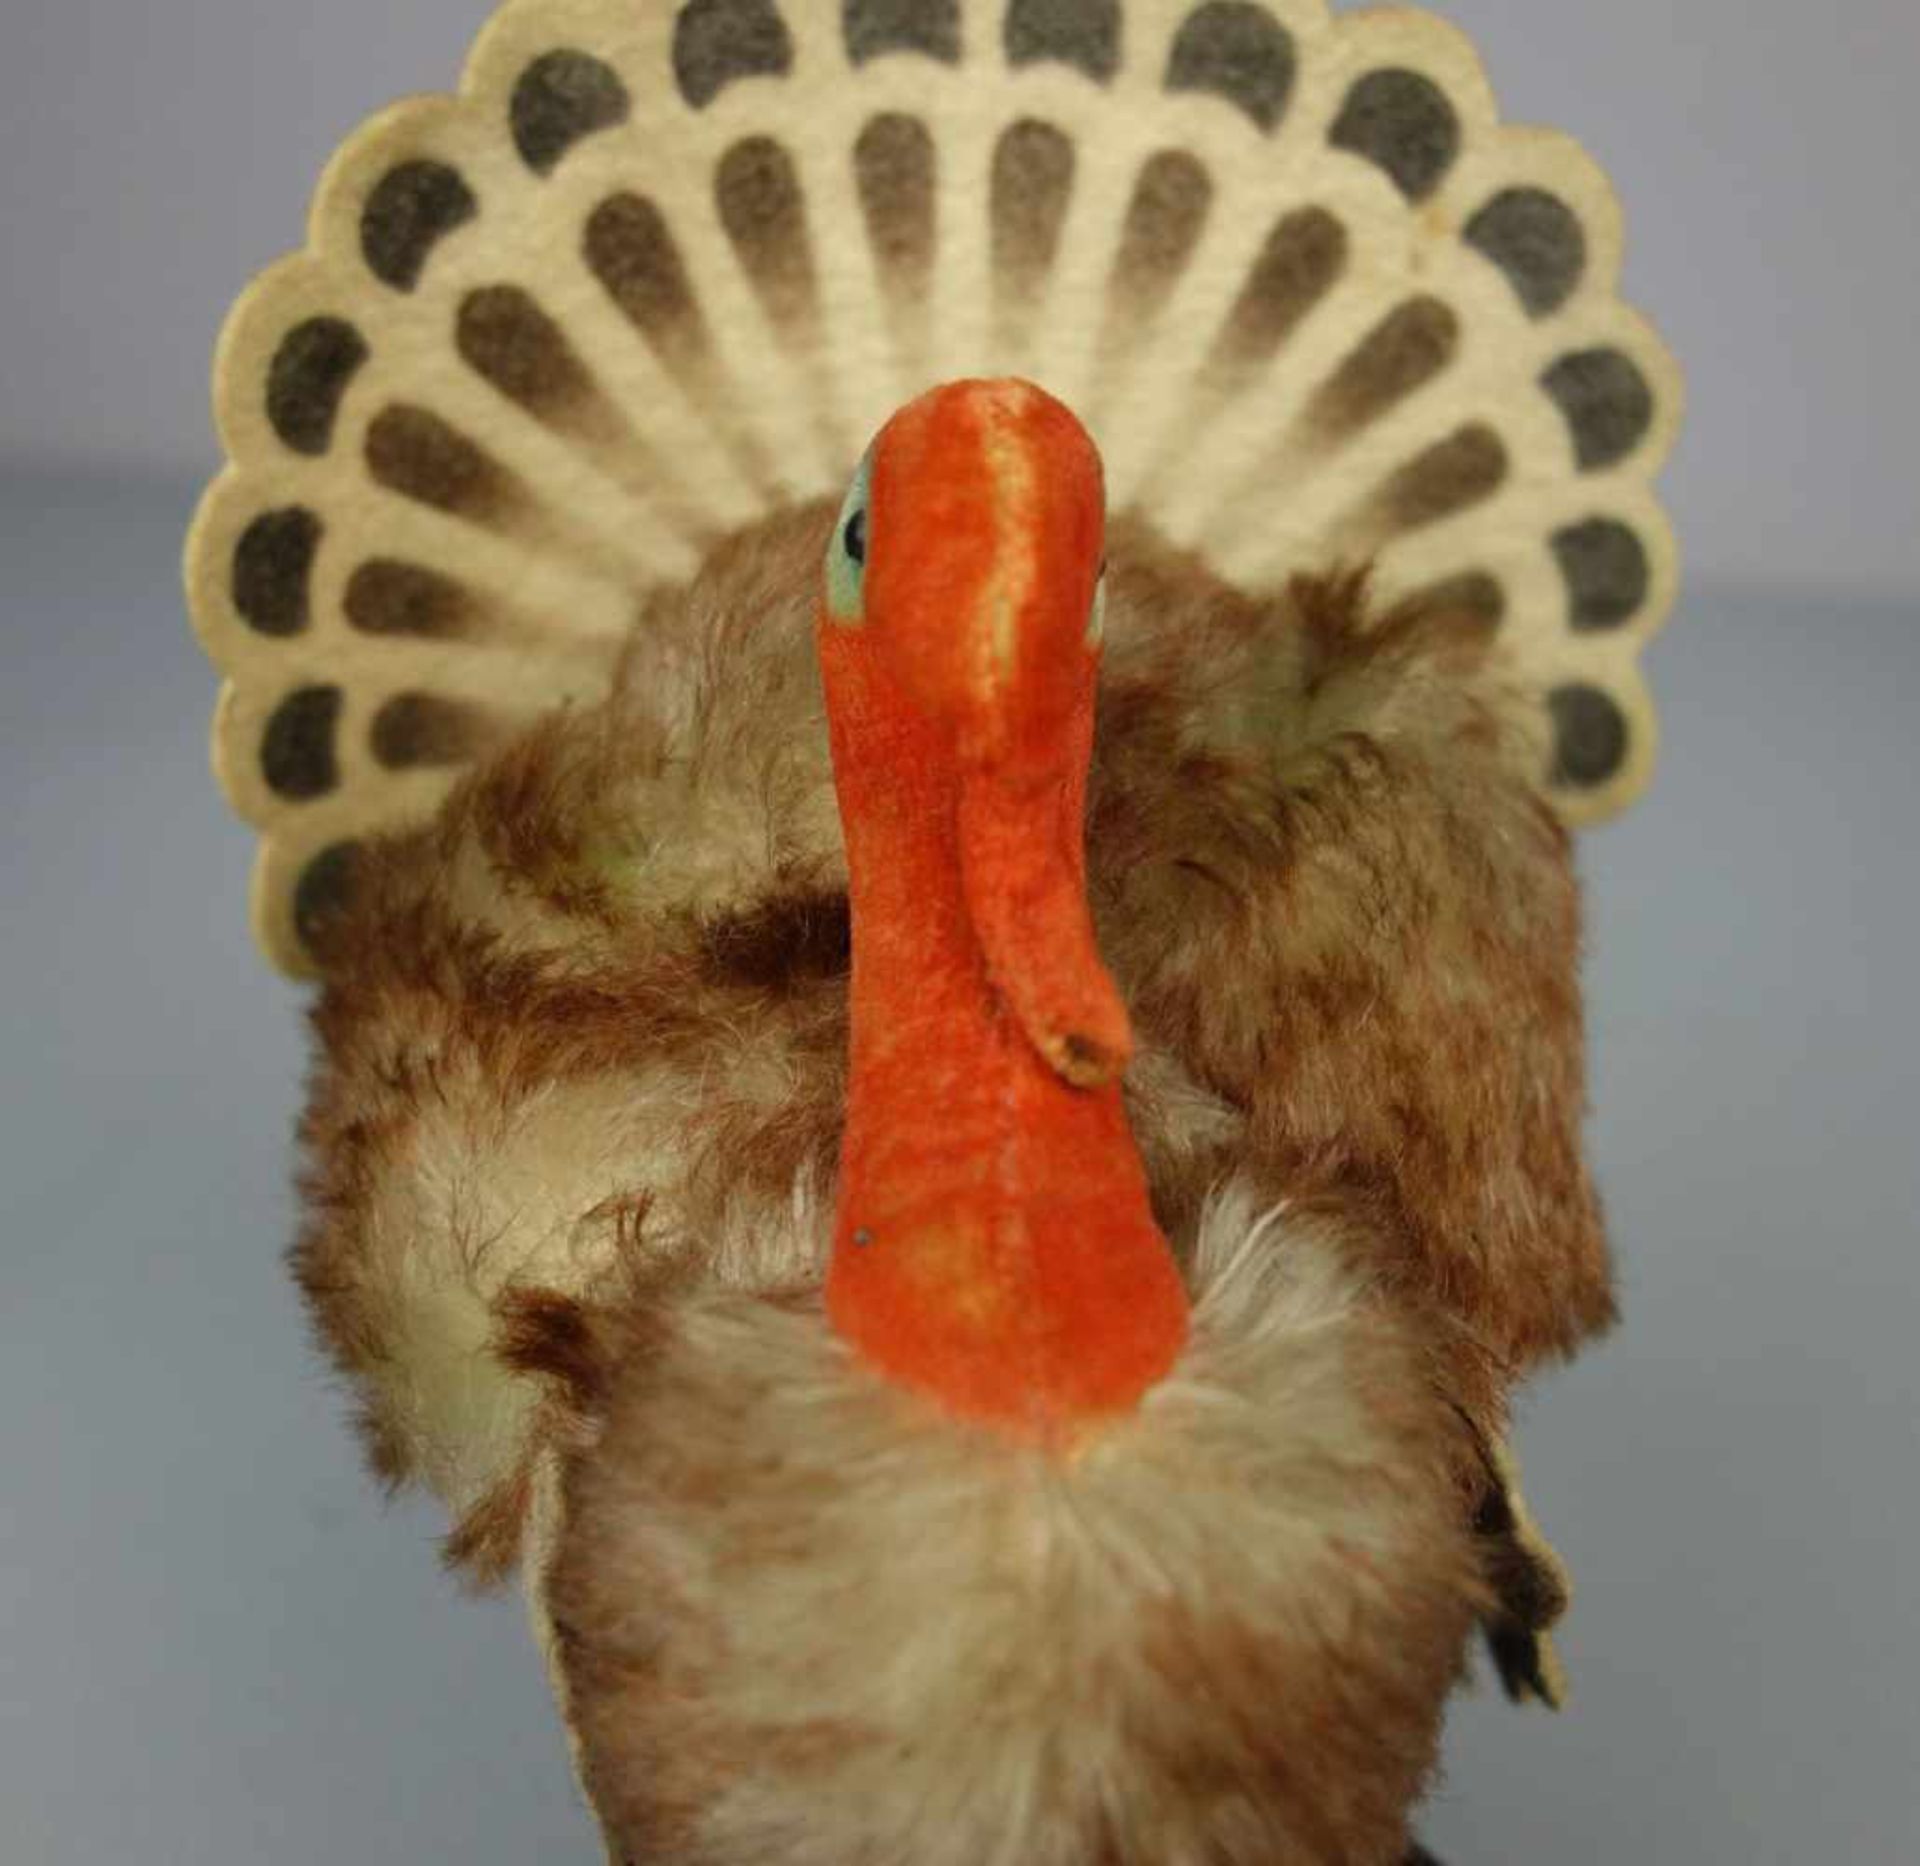 PLÜSCHTIER: STEIFF TRUTHAHN "Tucky" / fluffy turkey, wohl 1960er Jahre, Mohair/Filz und - Bild 5 aus 6